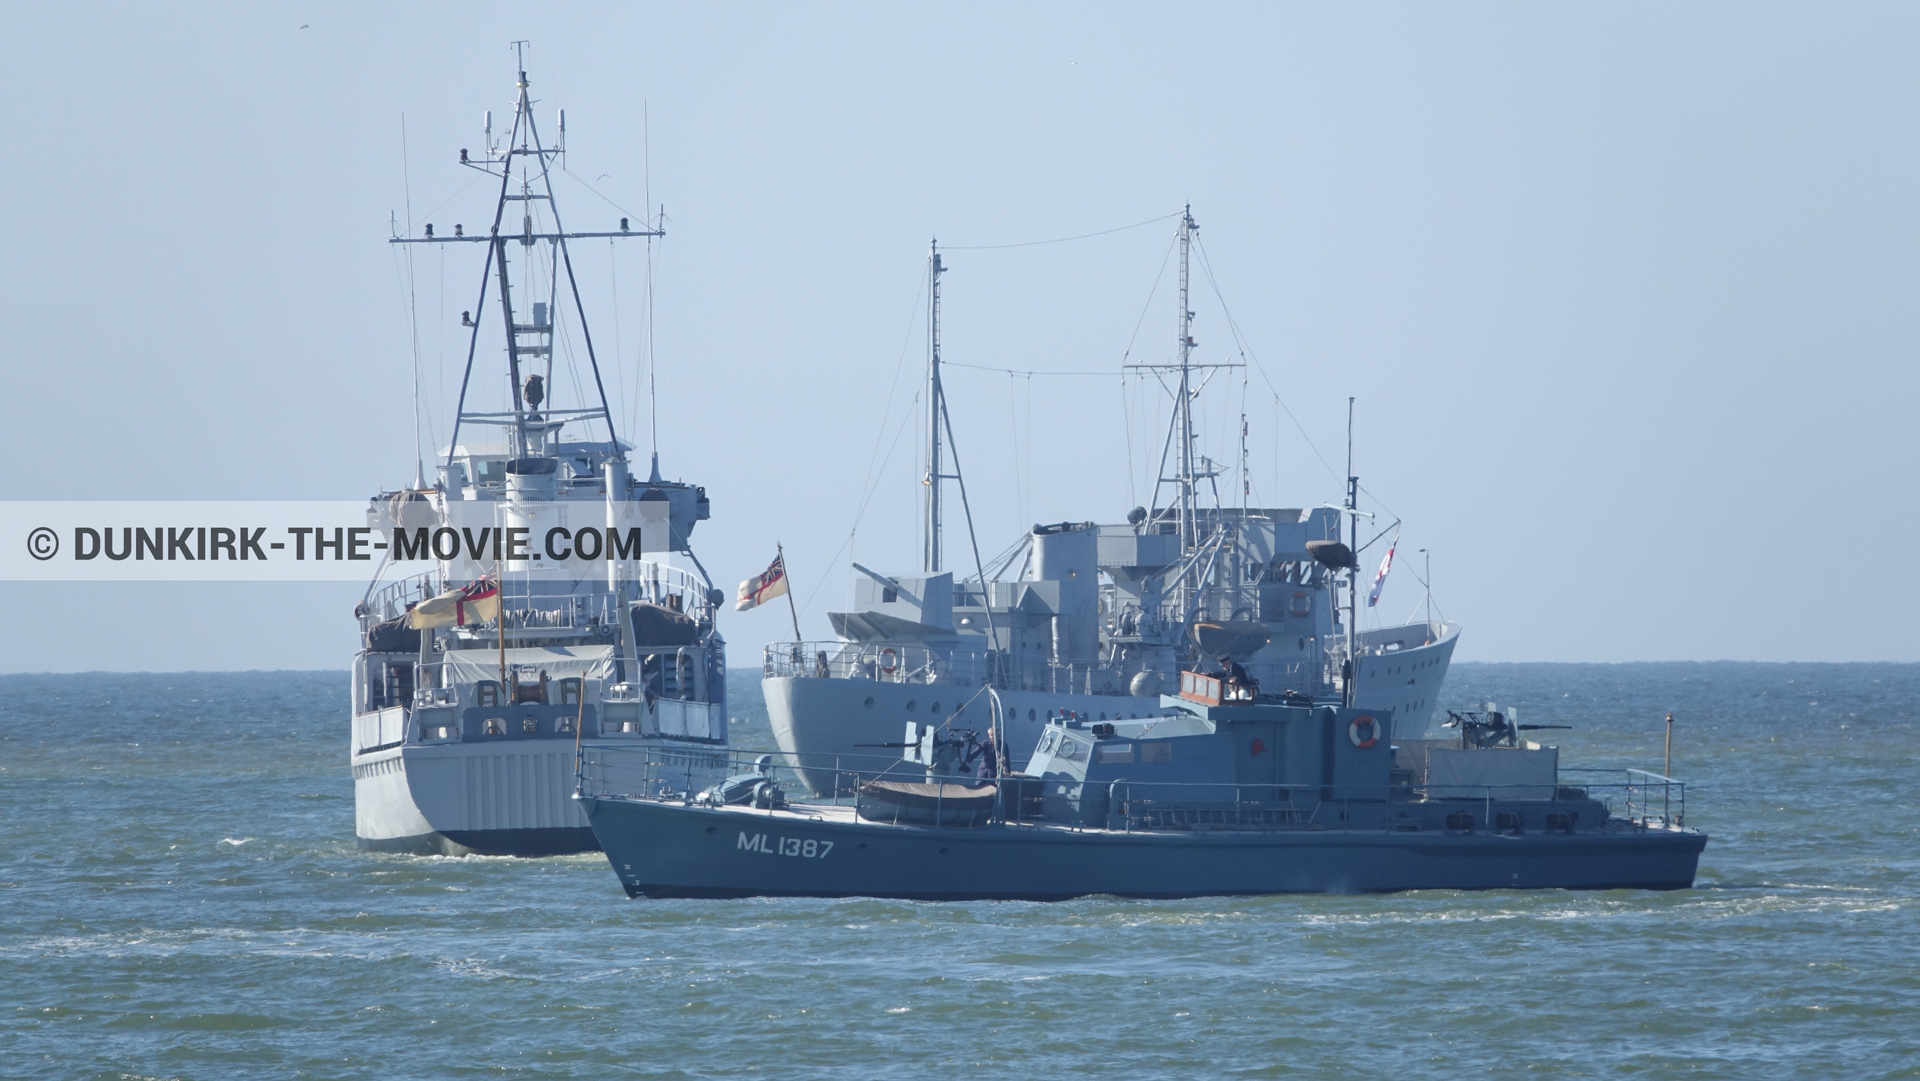 Photo avec bateau, ciel bleu, HMS Medusa - ML1387, mer calme,  des dessous du Film Dunkerque de Nolan